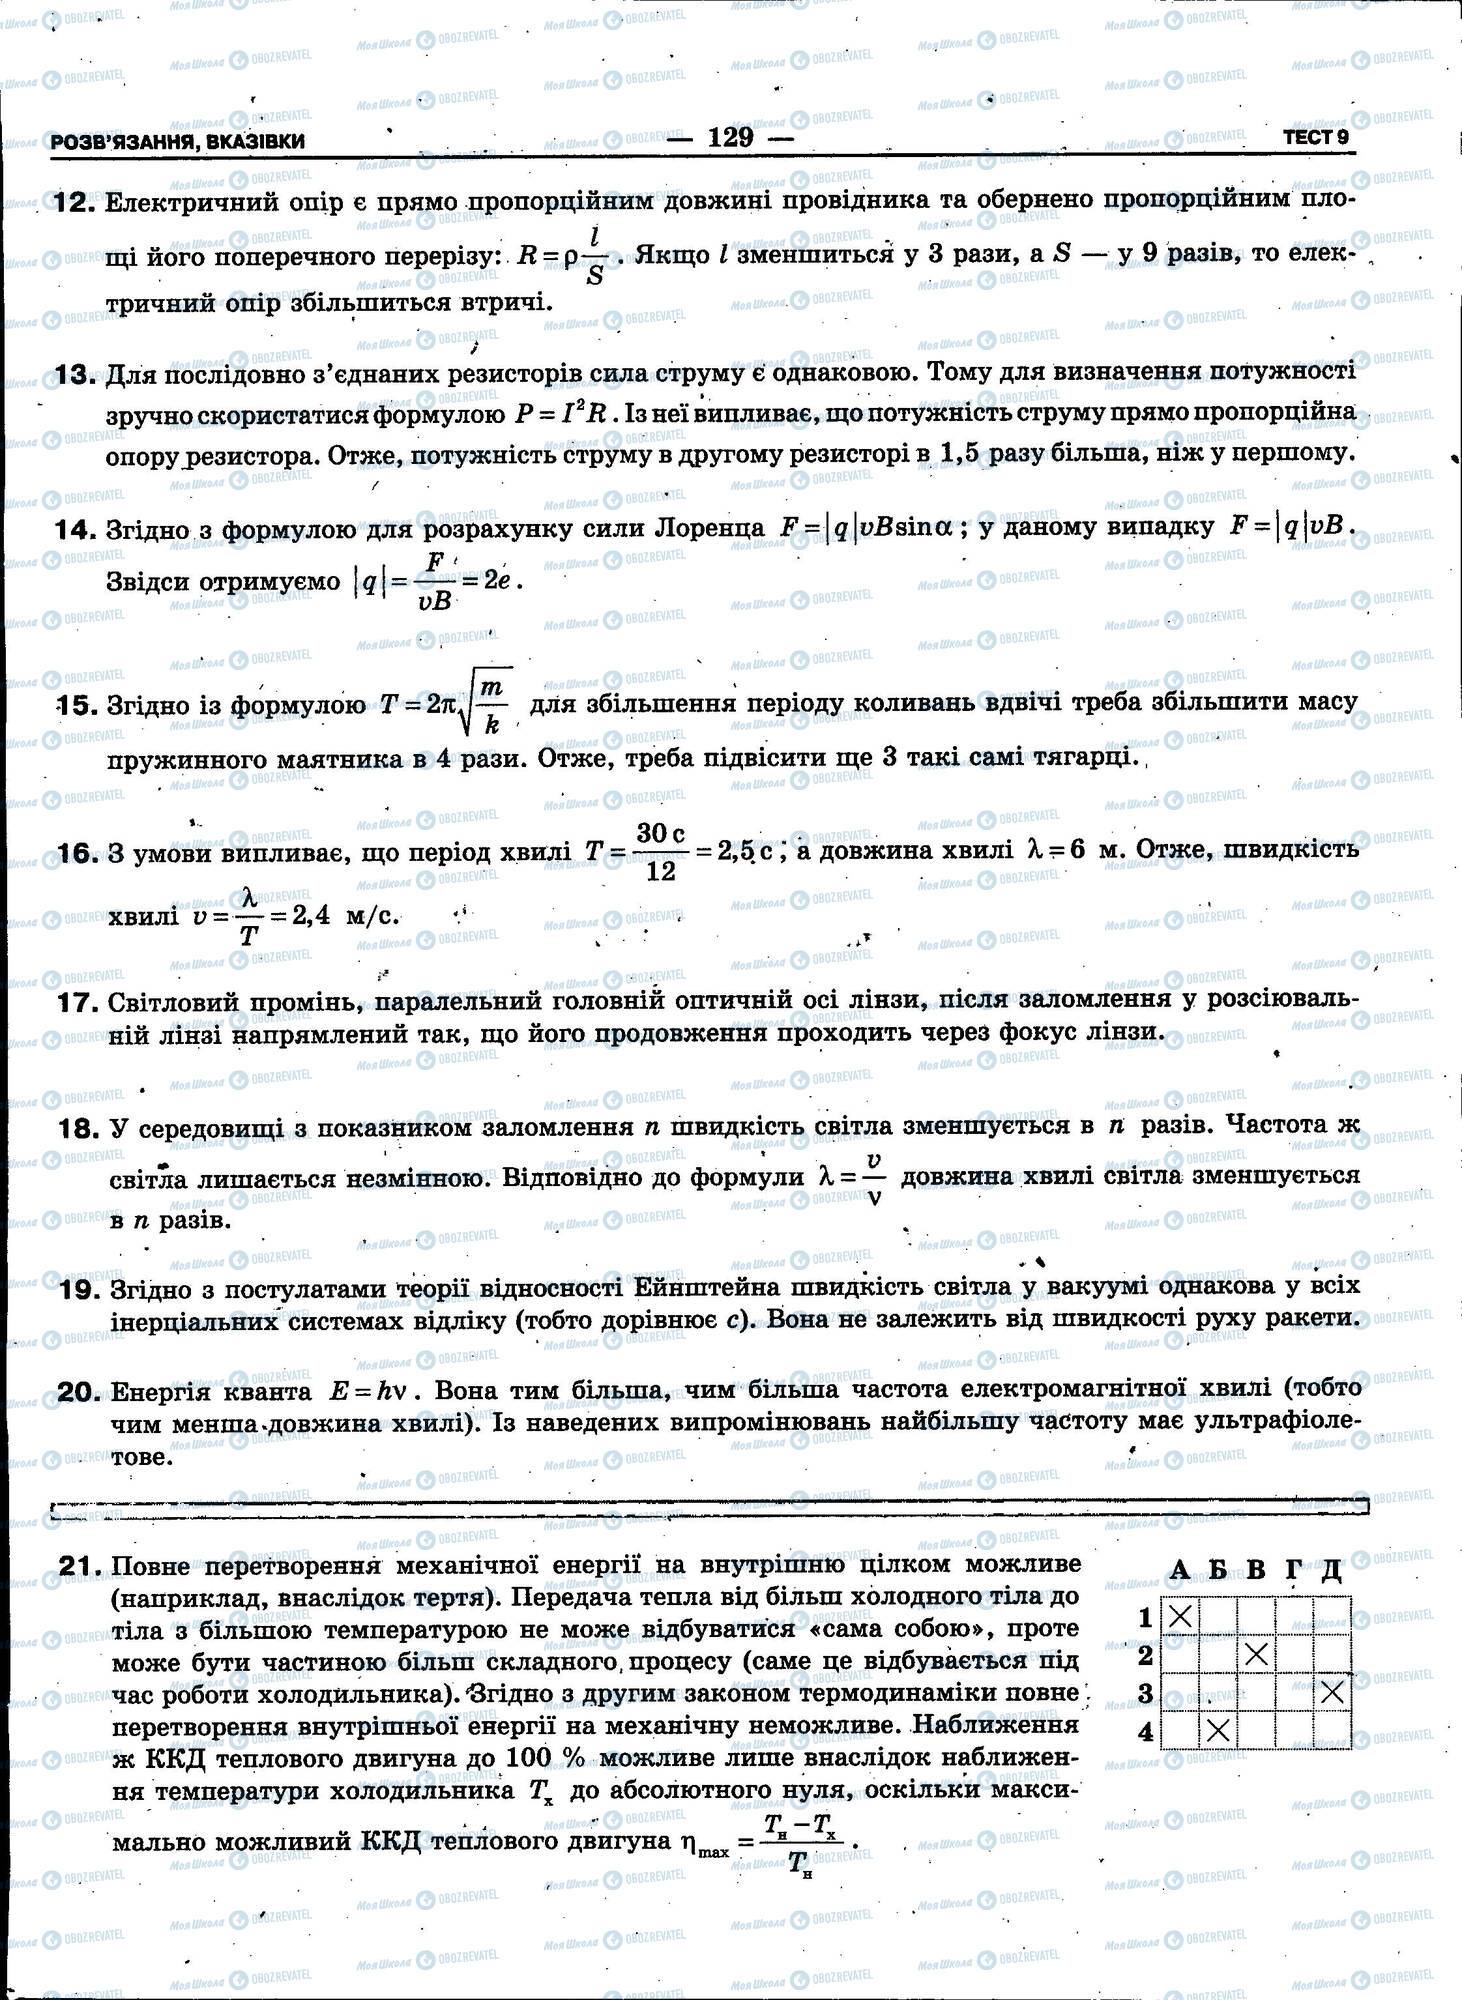 ЗНО Физика 11 класс страница 129